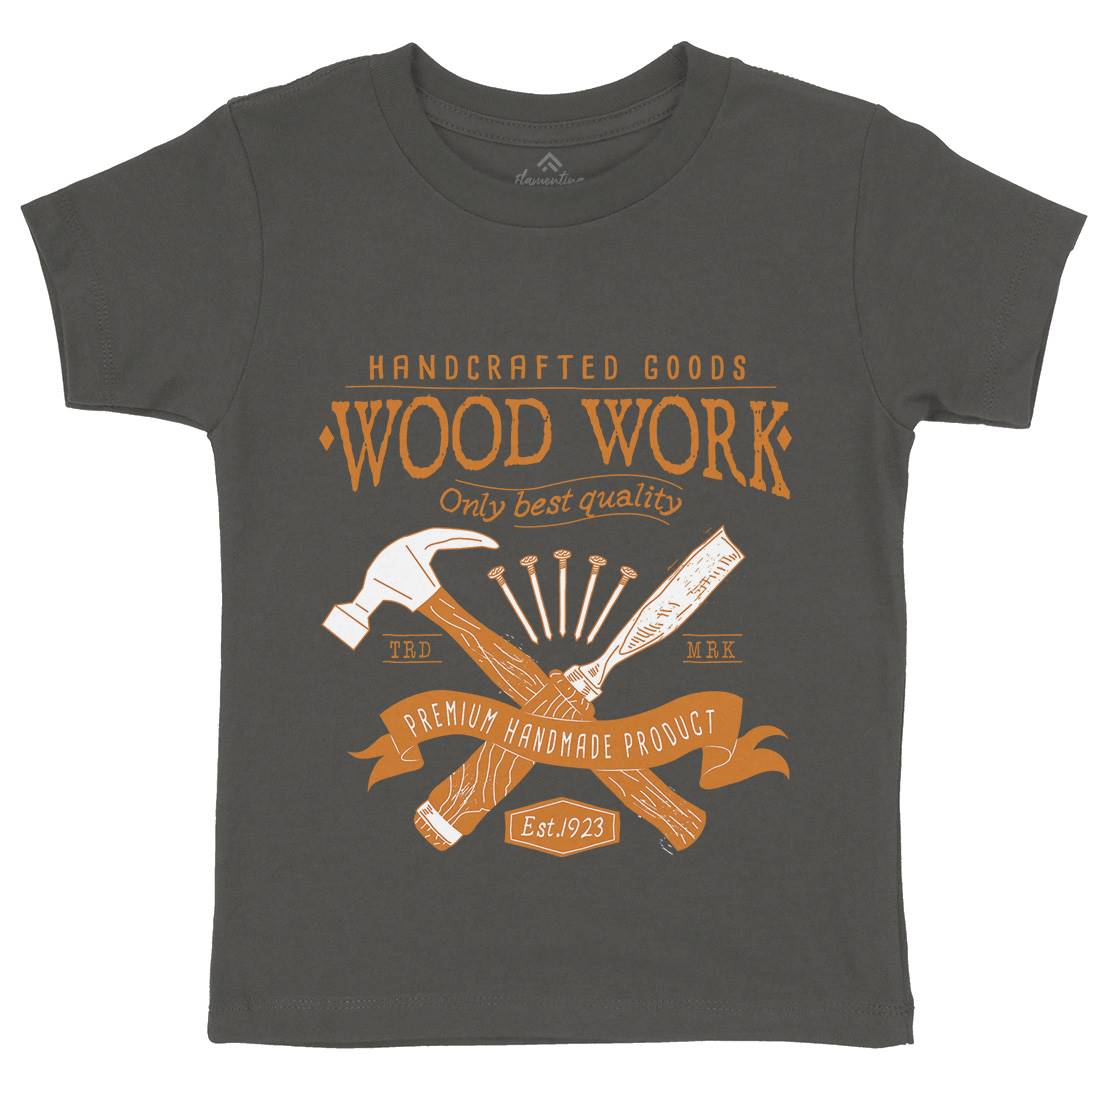 Wood Kids Crew Neck T-Shirt Work A972